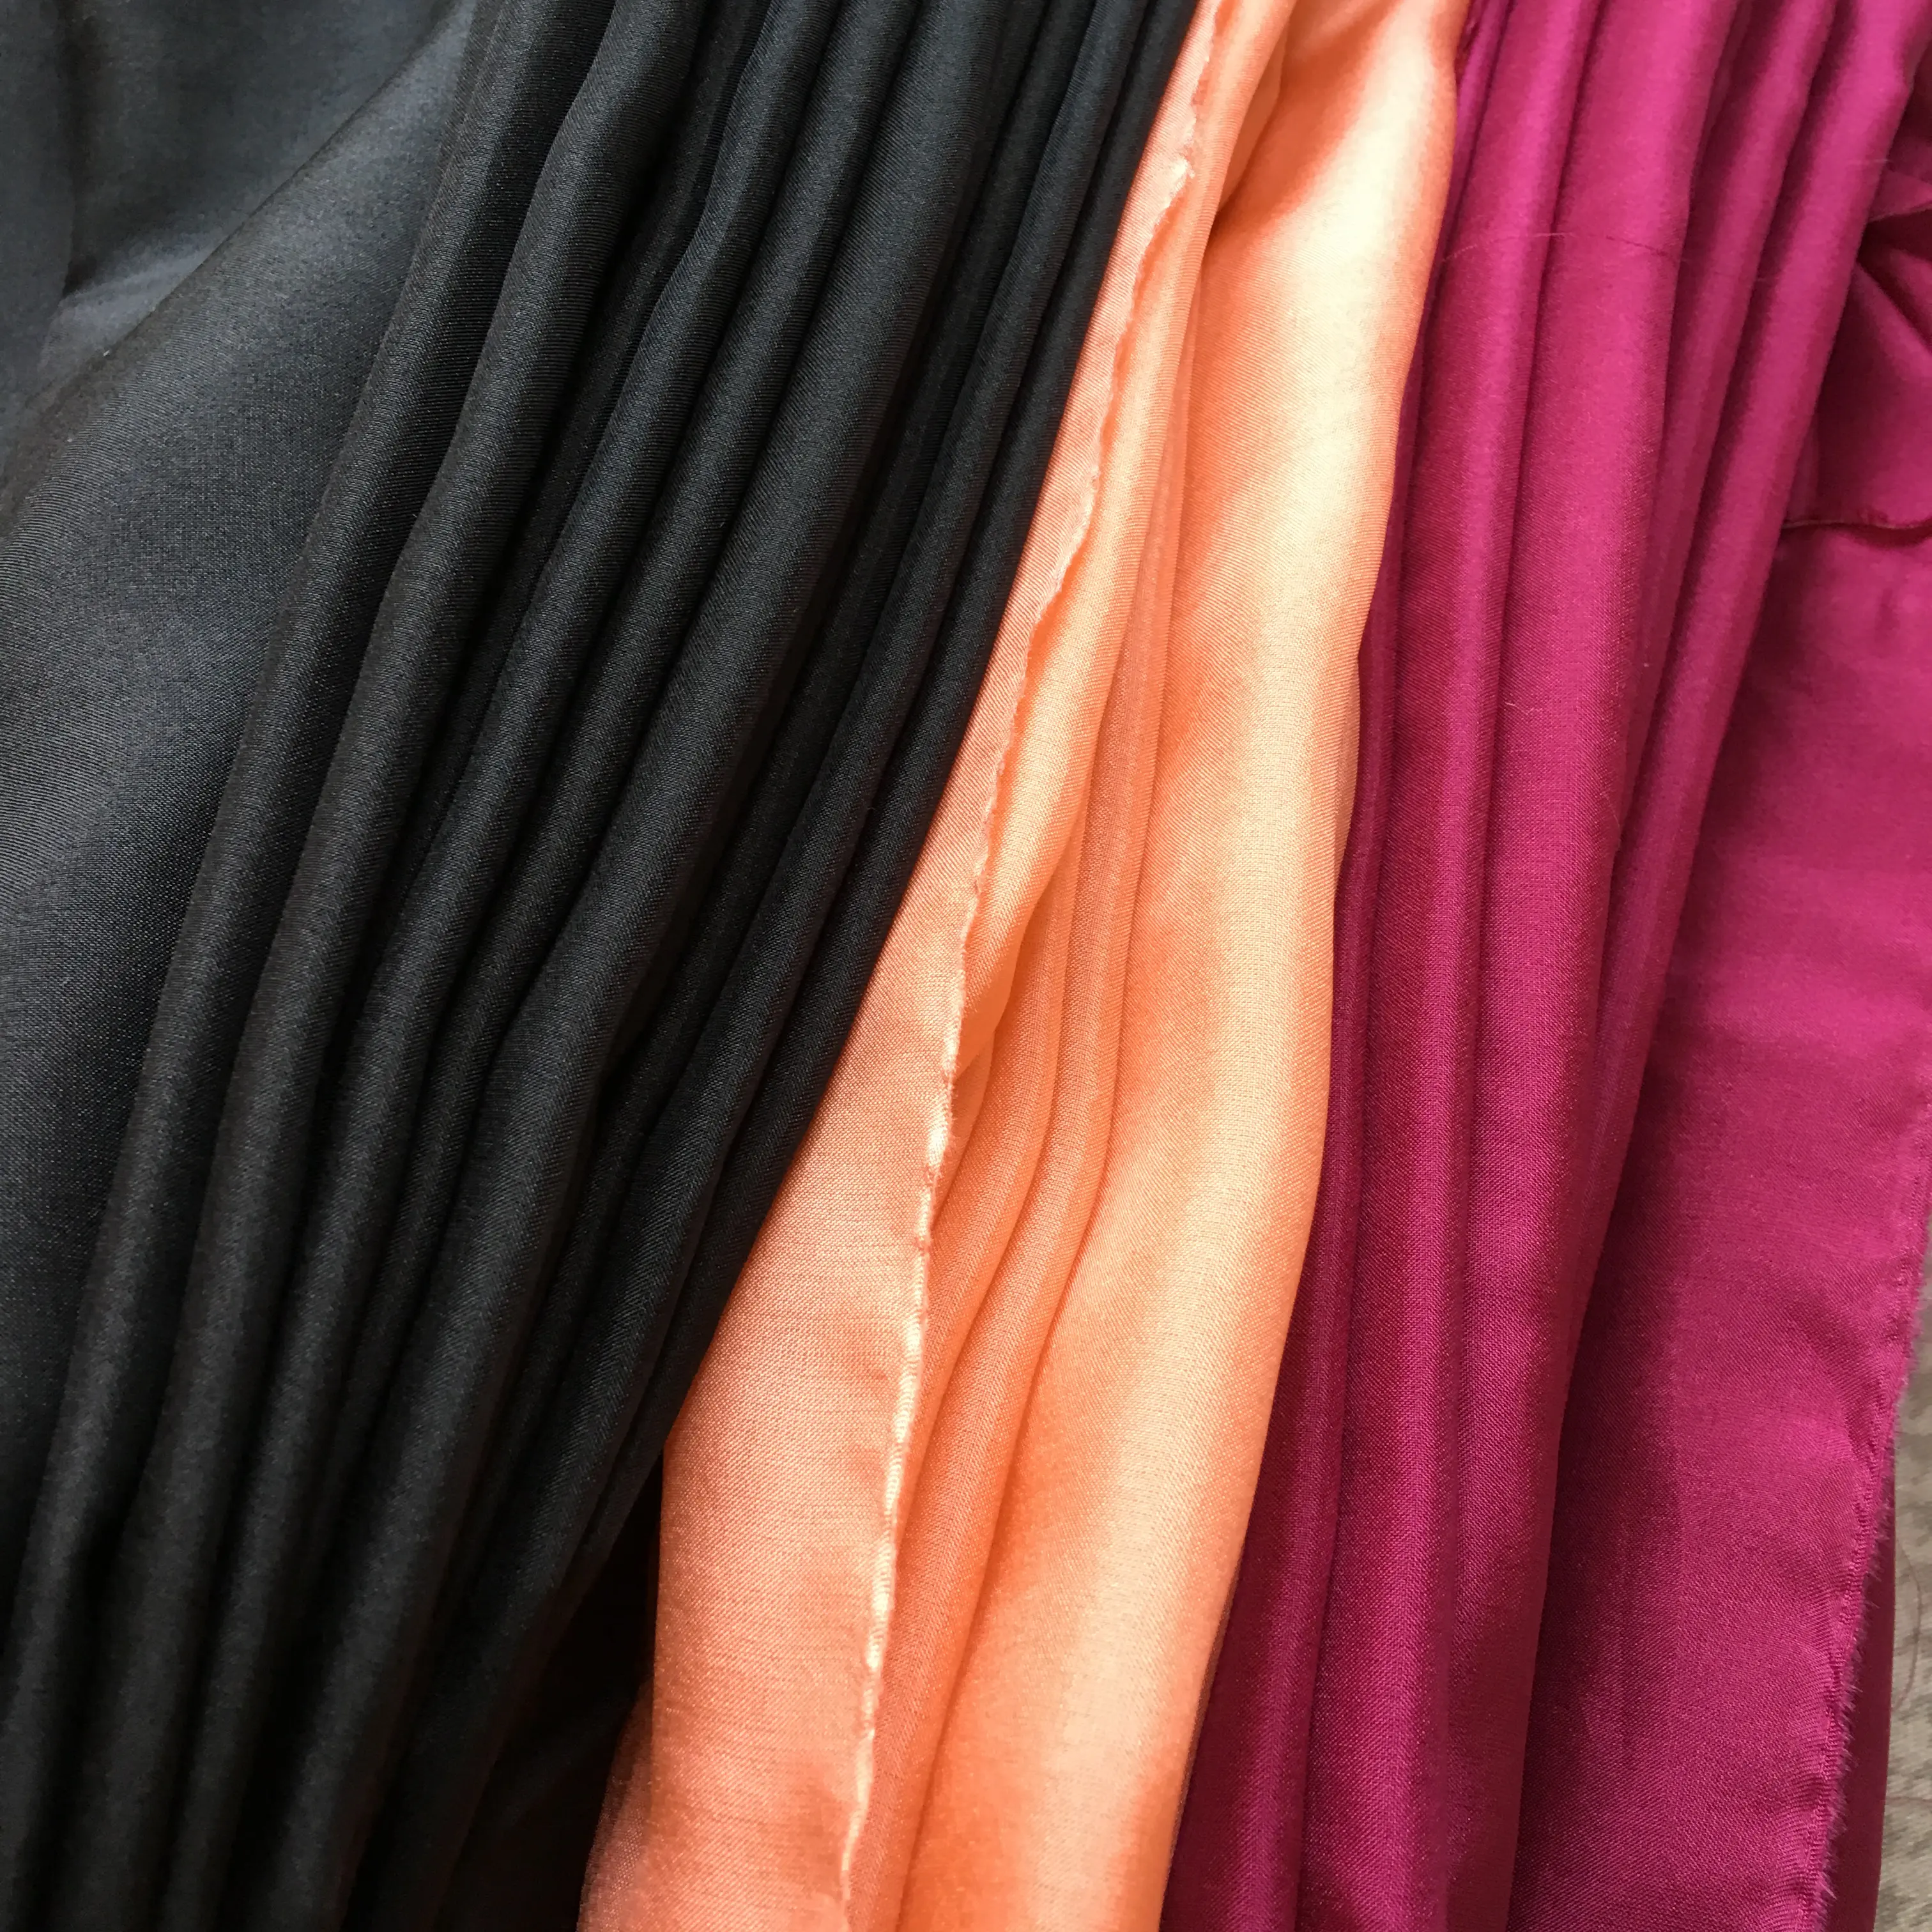 Moda tasarım toptan ipek karışımı nakış kumaş kumaş üzerinde kadınlar için giysi eşarp sıcak satış